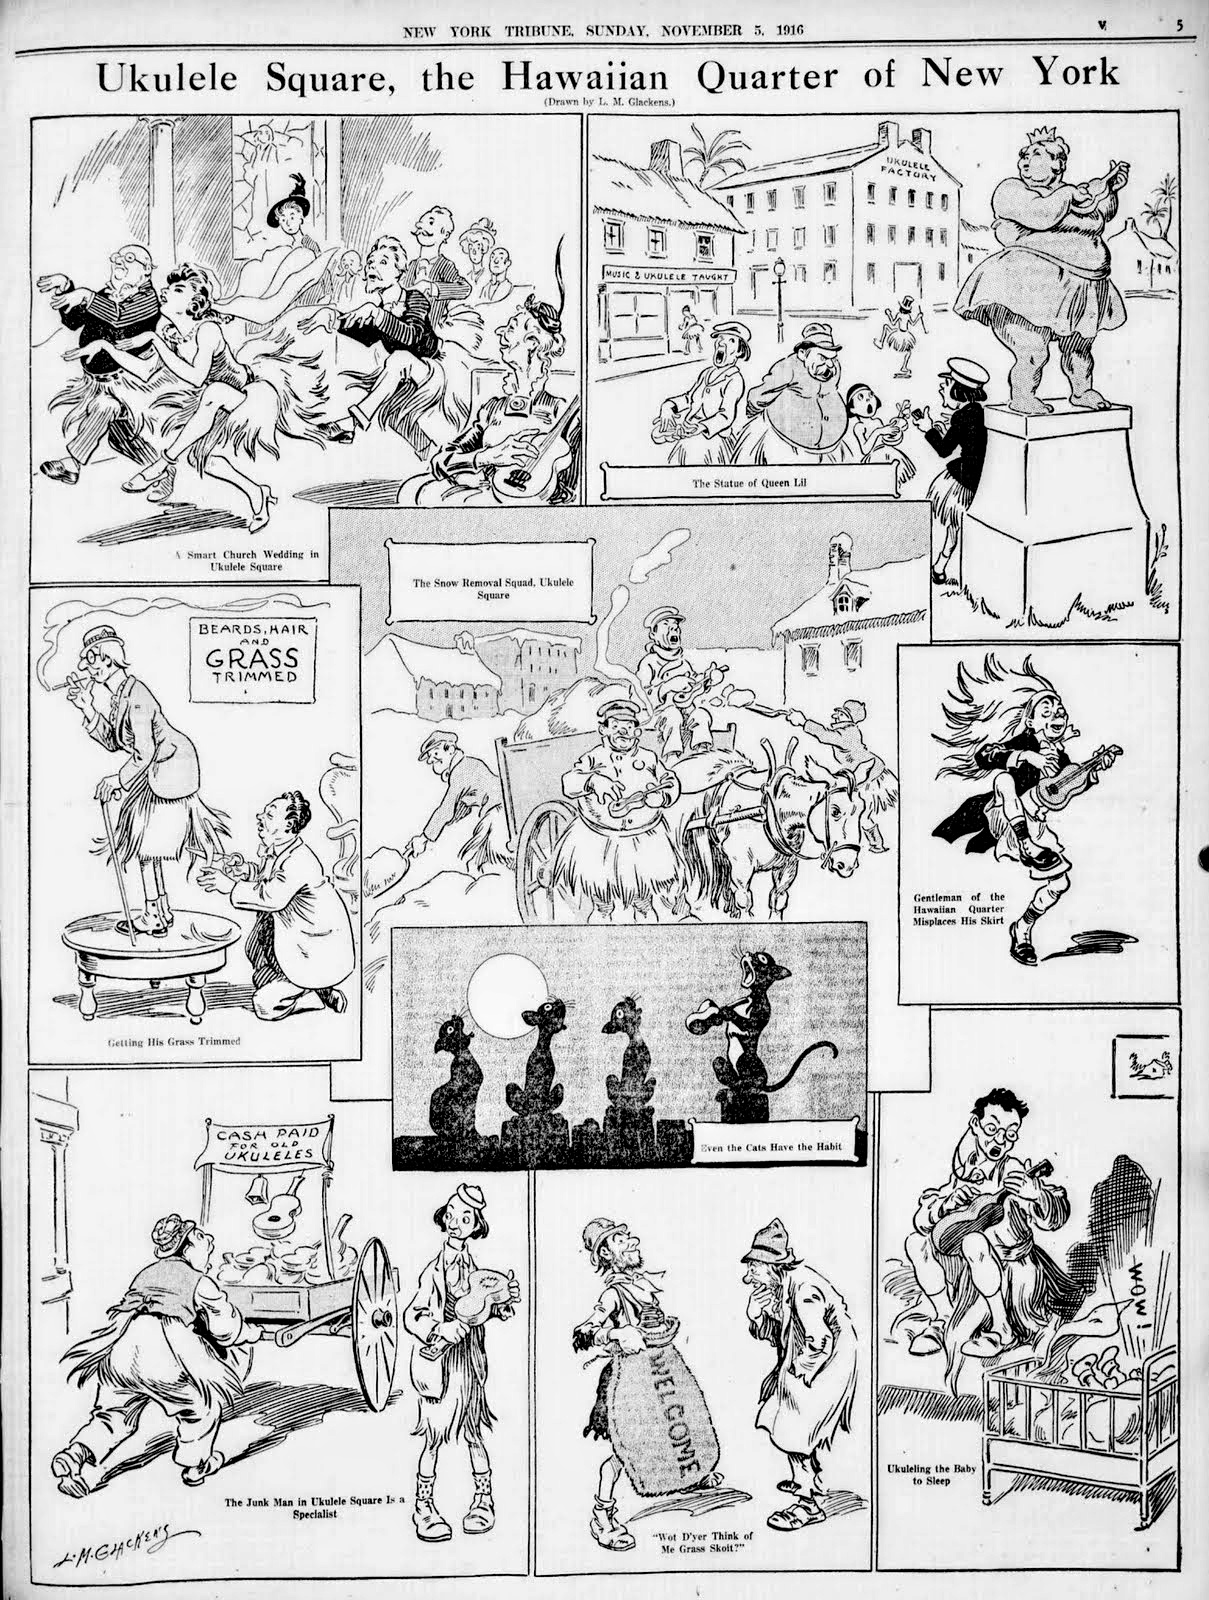 Ukulele Square | New York Tribune, November 5, 1916